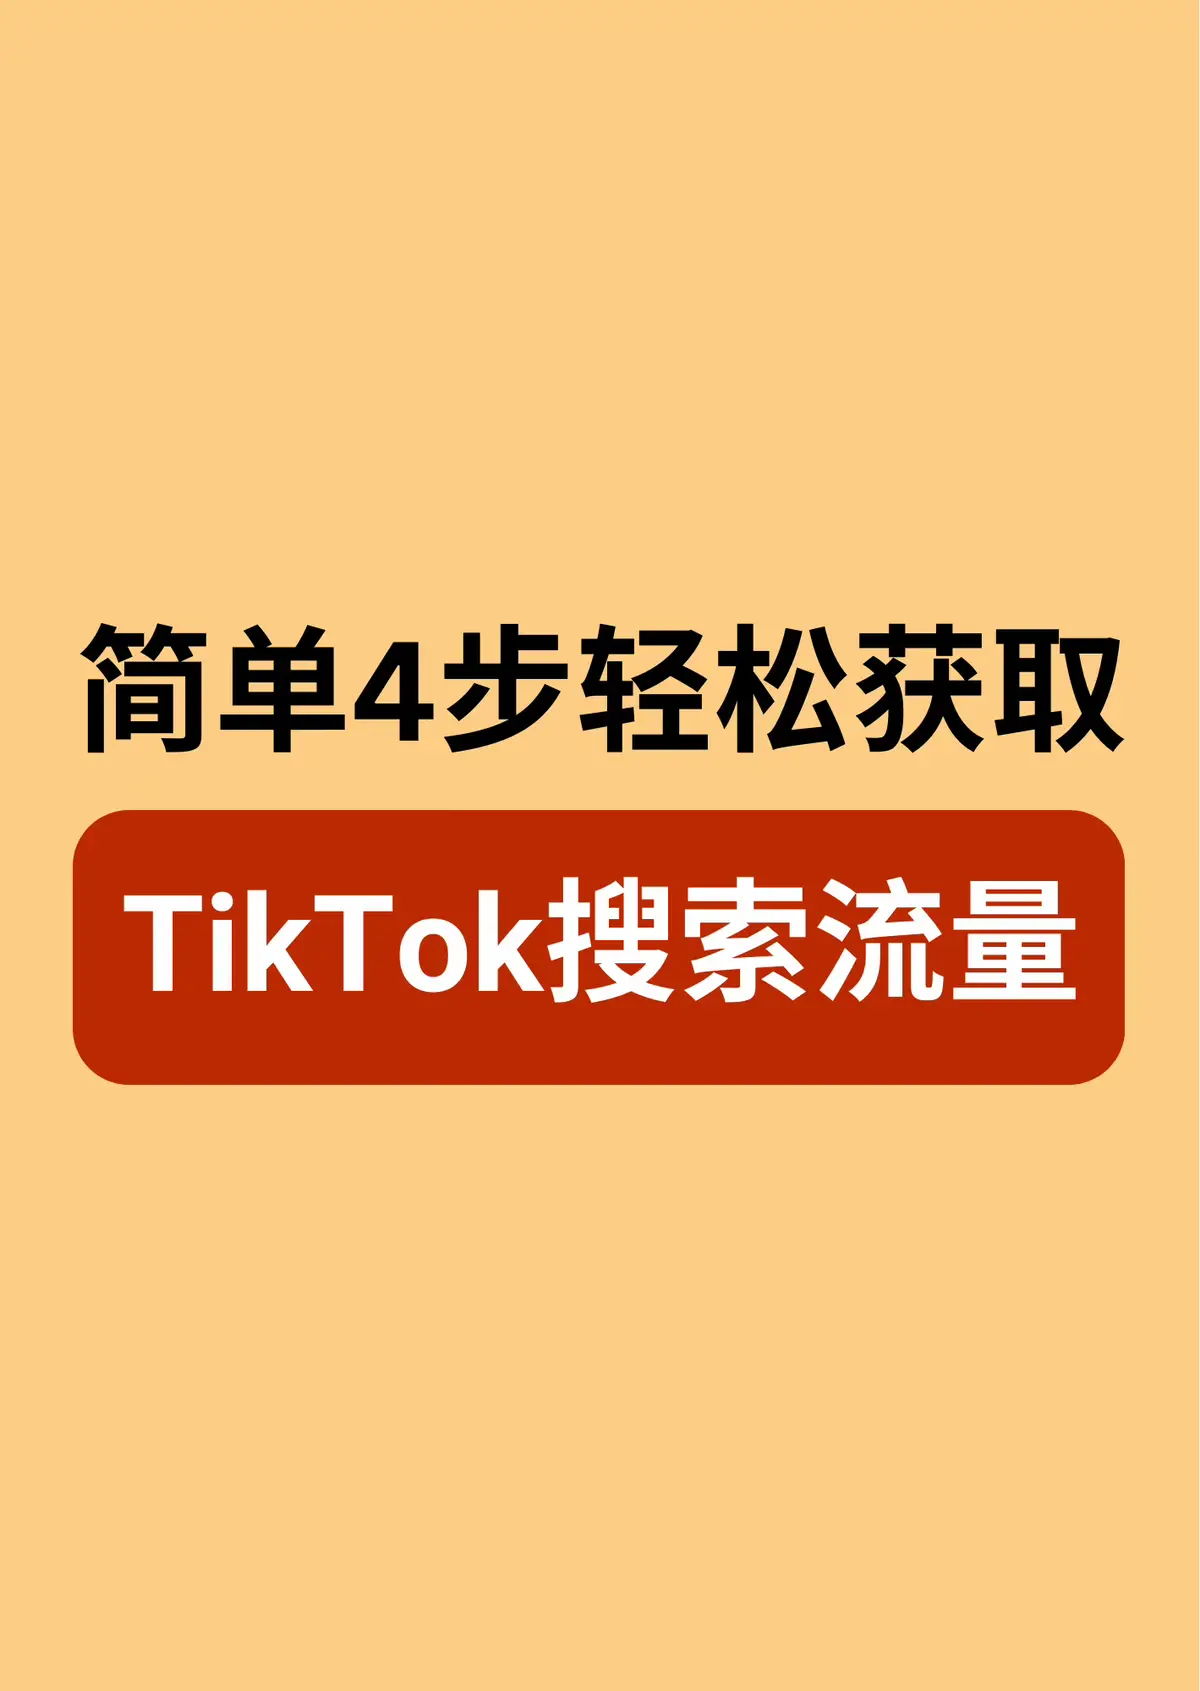 #短视频小启发 #tiktok #seo #流量 #企业思维 #企业 #上热门 